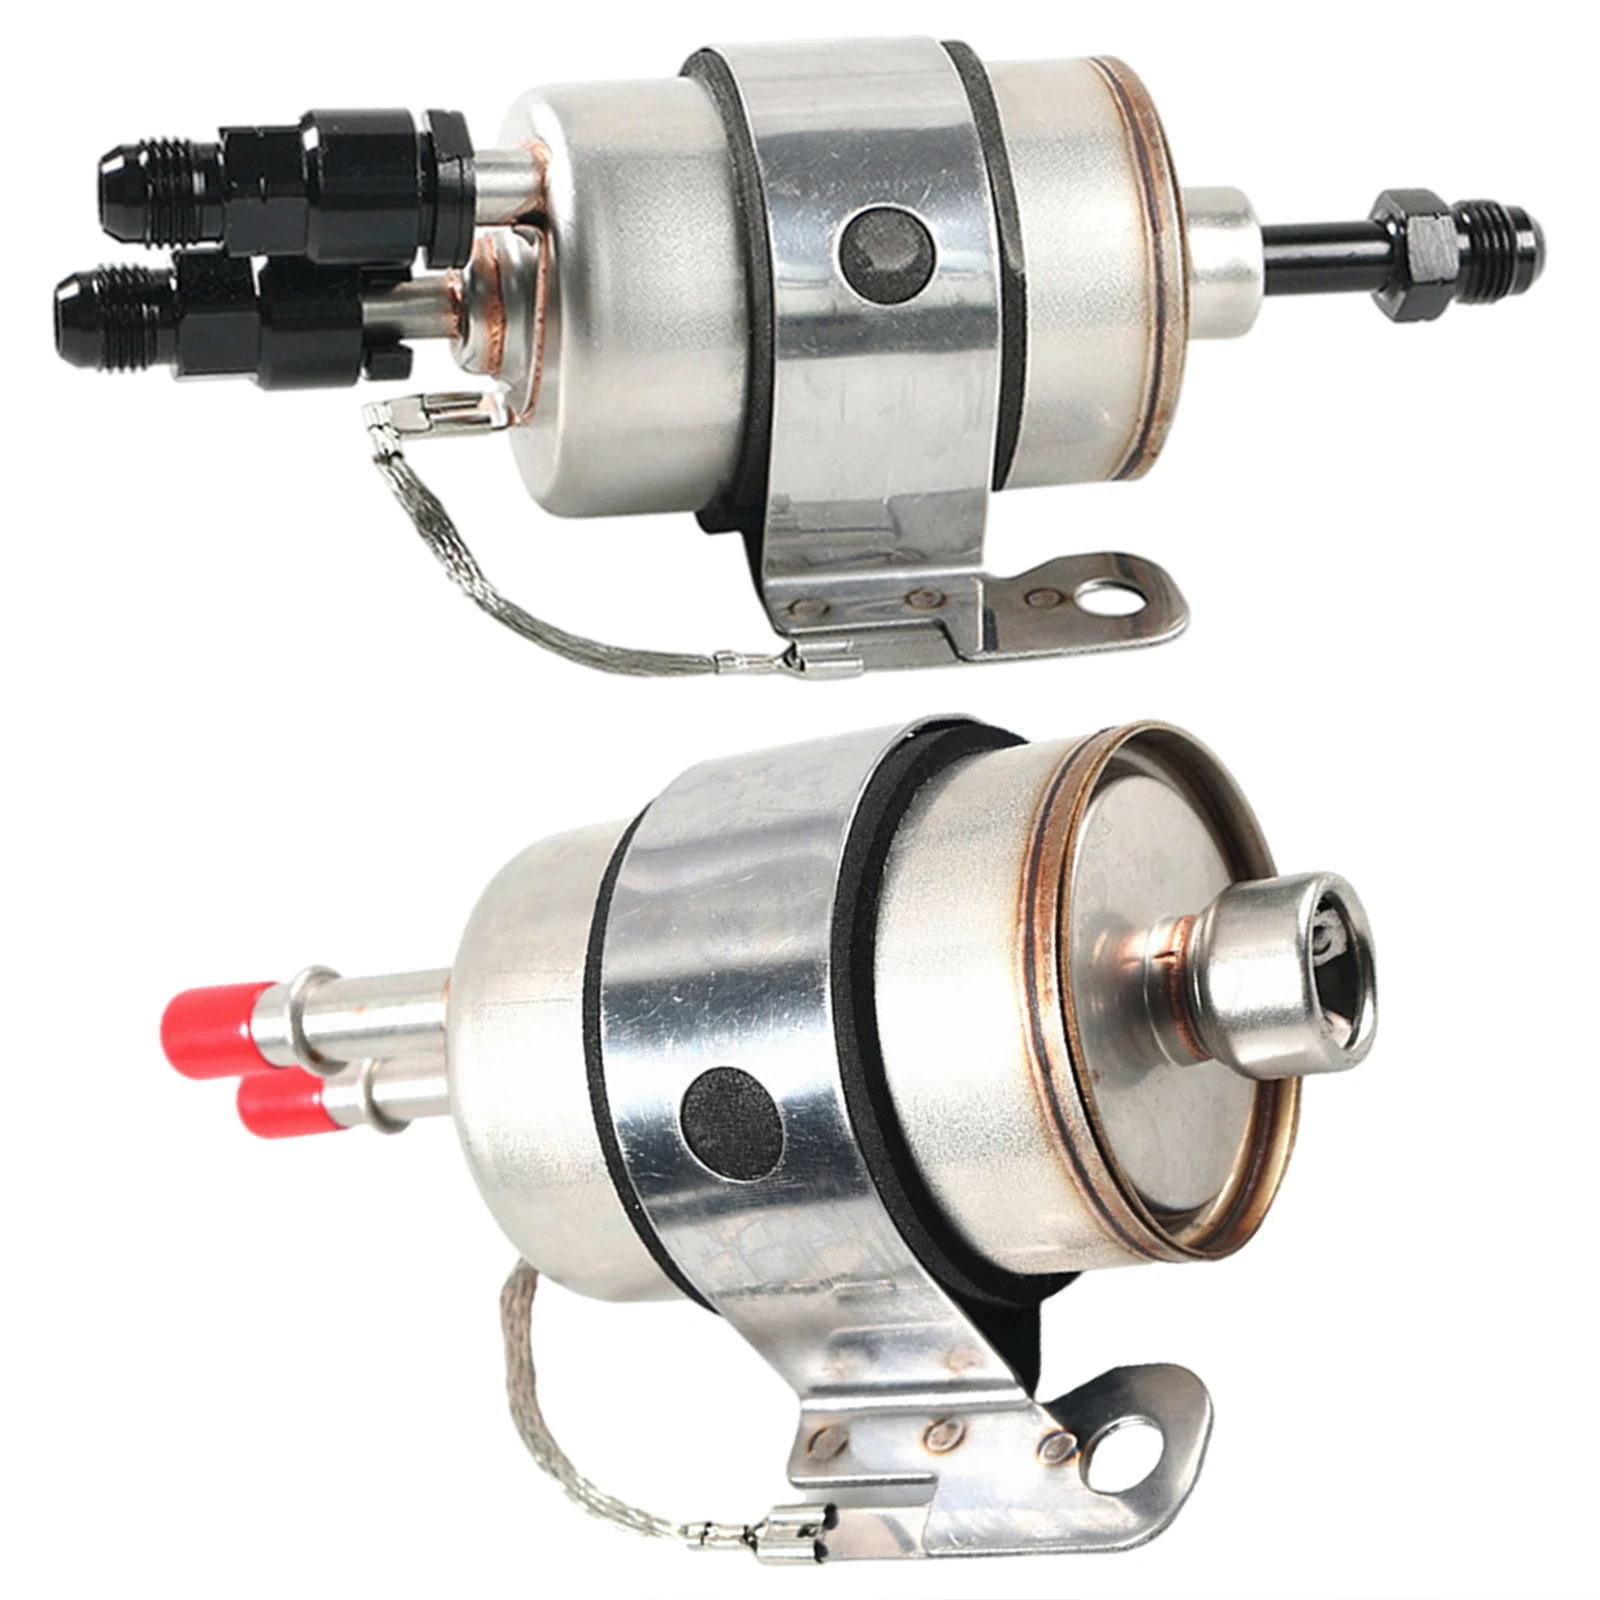 Fuel Filter Regulator Filter Assembly Pressure Regulator Lq4 Fit for LS Conversion Car Engine